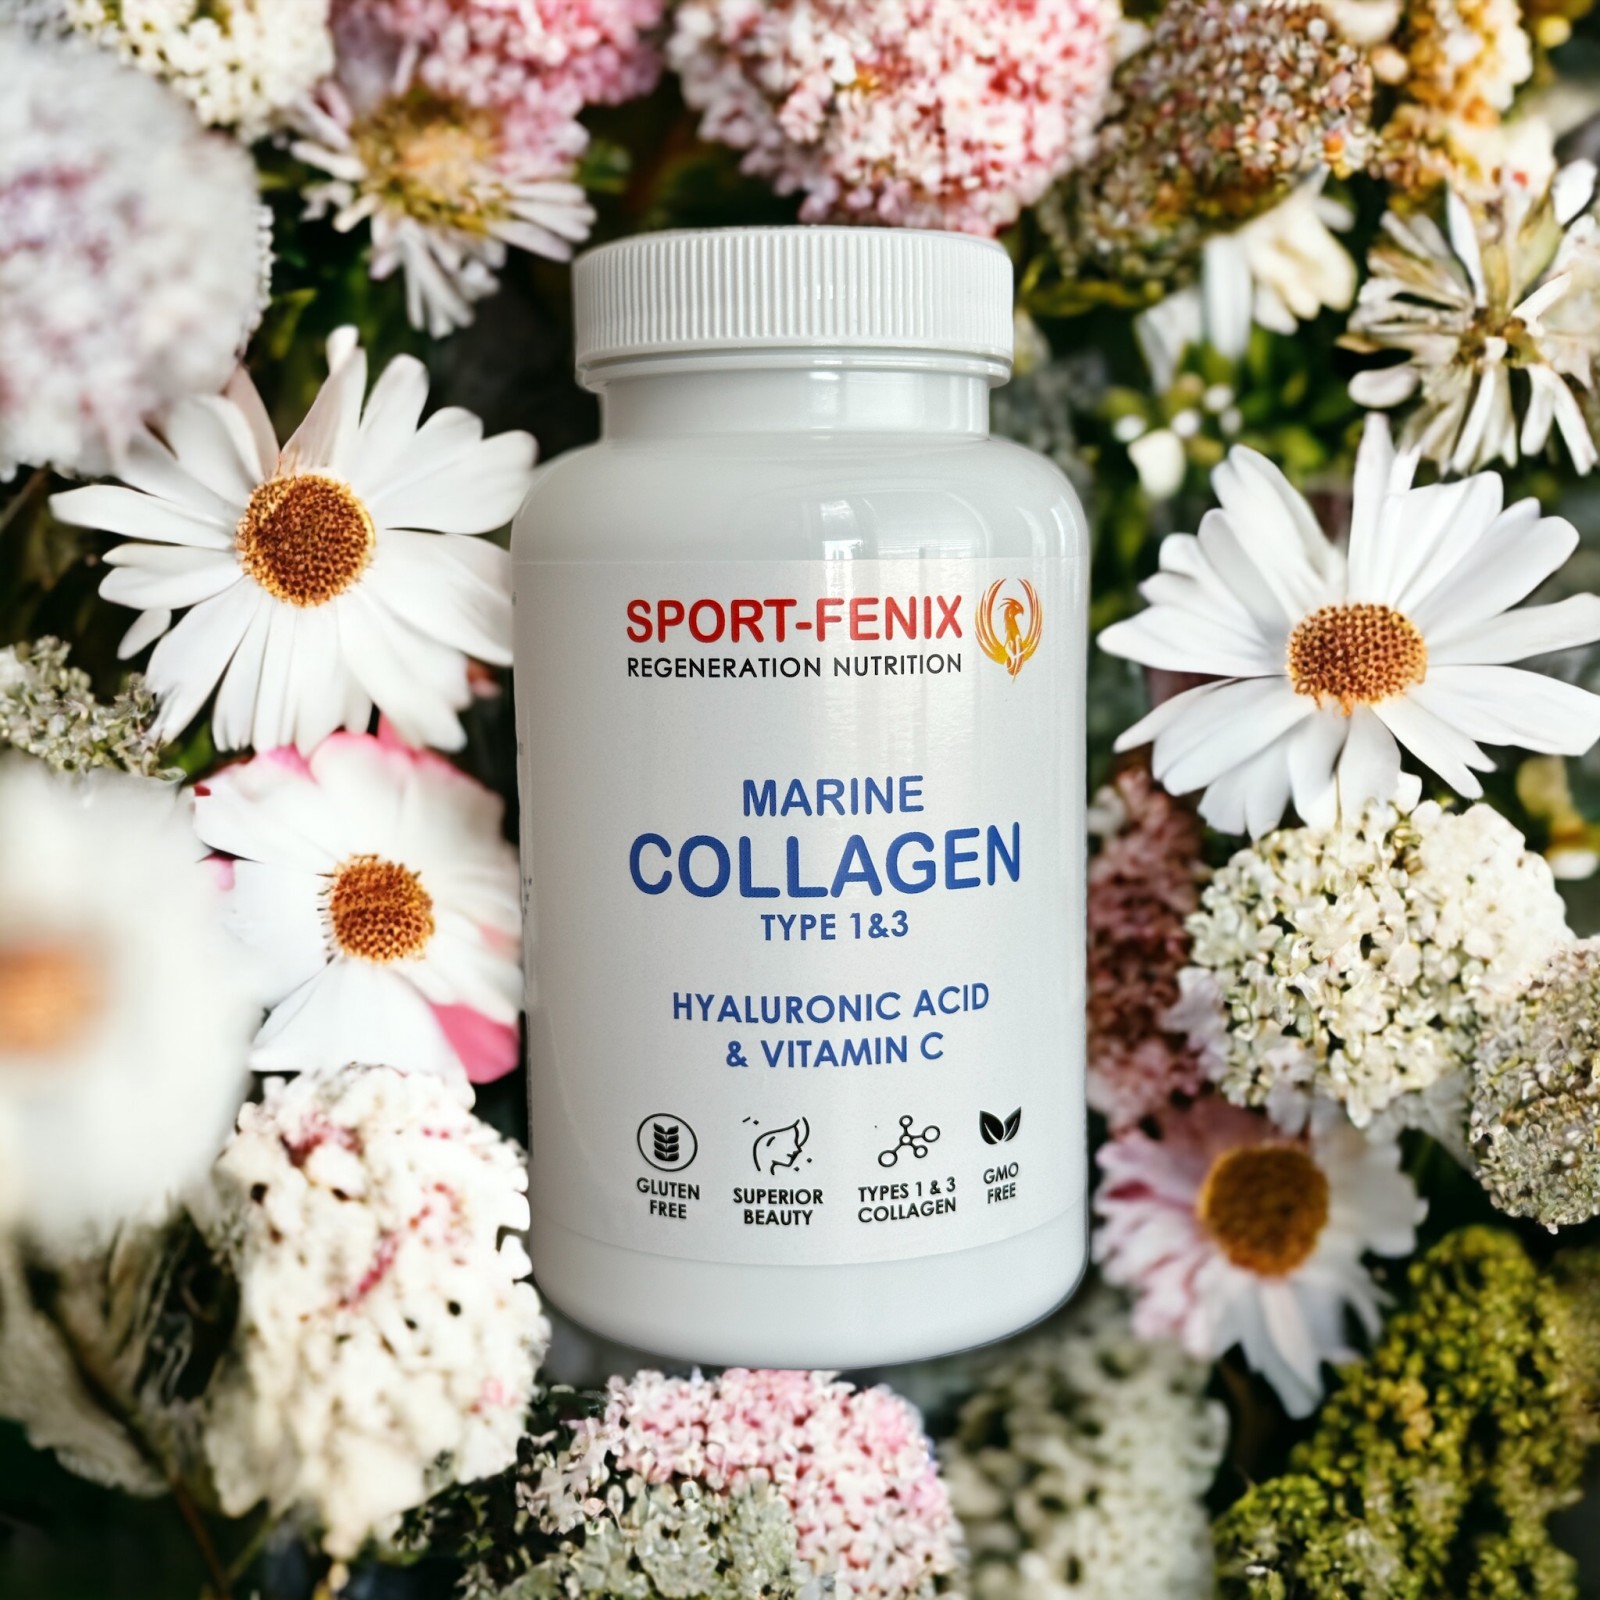 Колаген MARINE COLLAGEN, TM SPORT-FENIX TYPE II з Гіалуроновою кислотою та Вітаміном С, 120 капсул